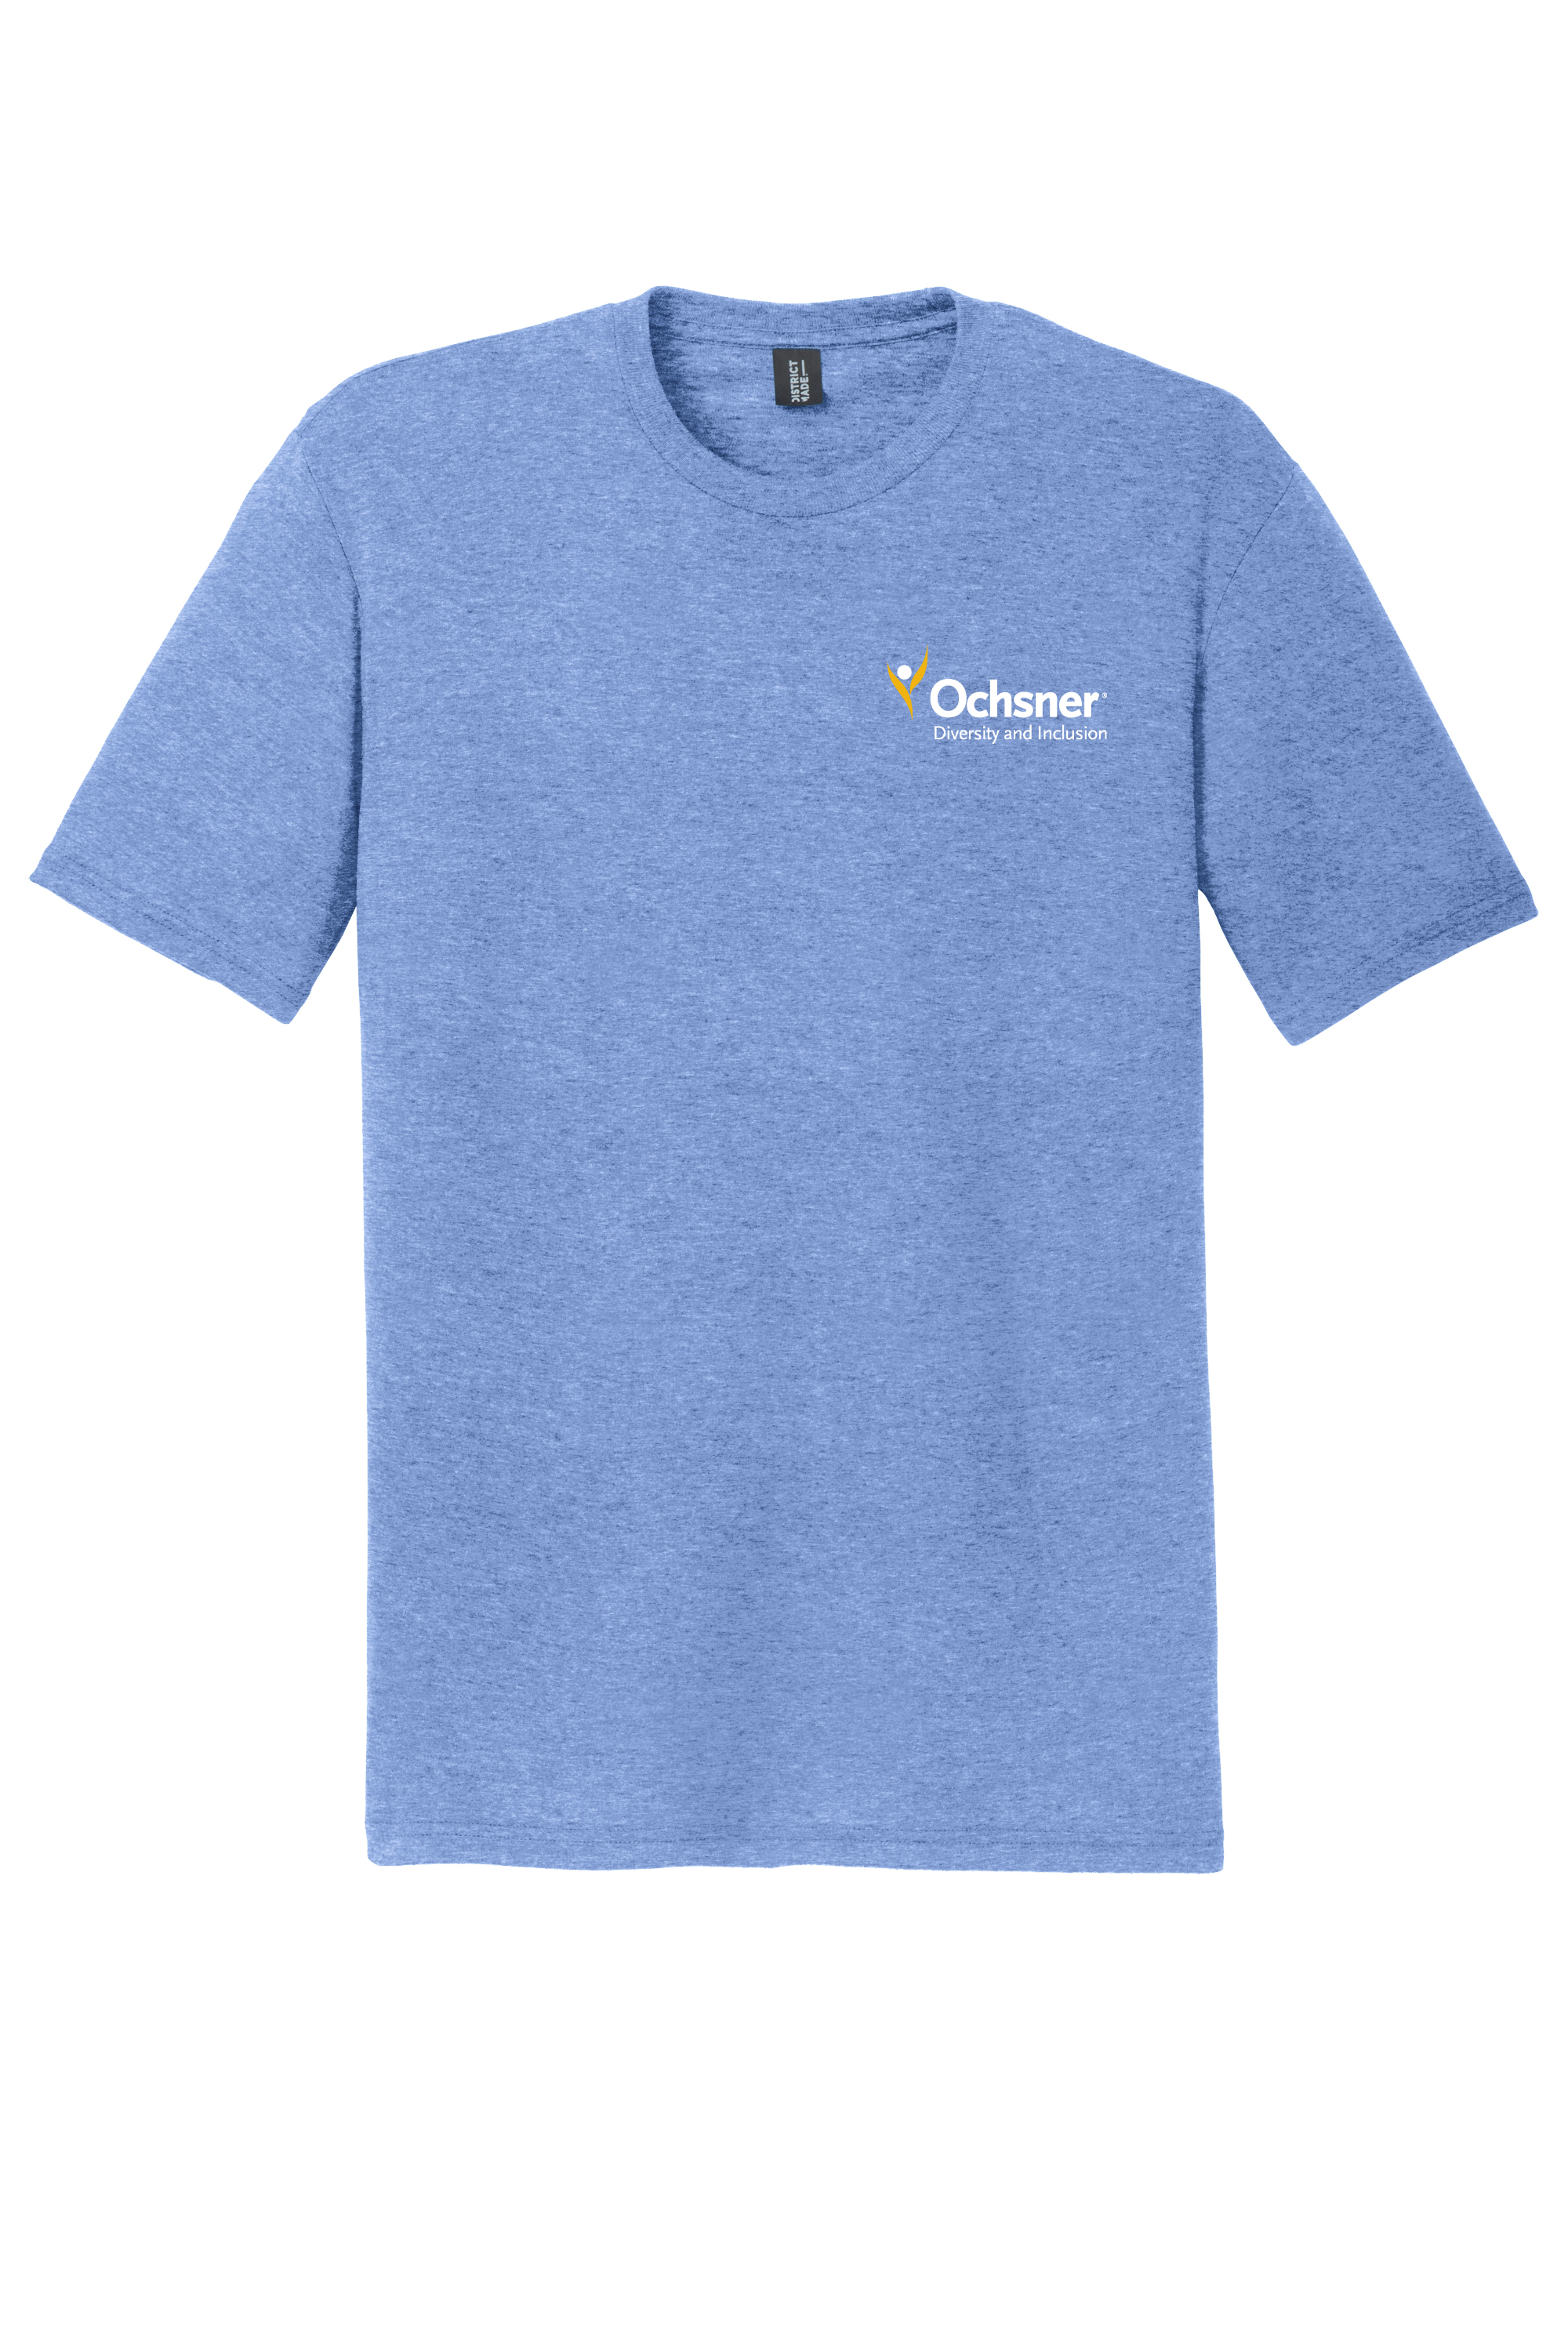 Ochsner PRIDE Unisex T-Shirt, Blue, large image number 2